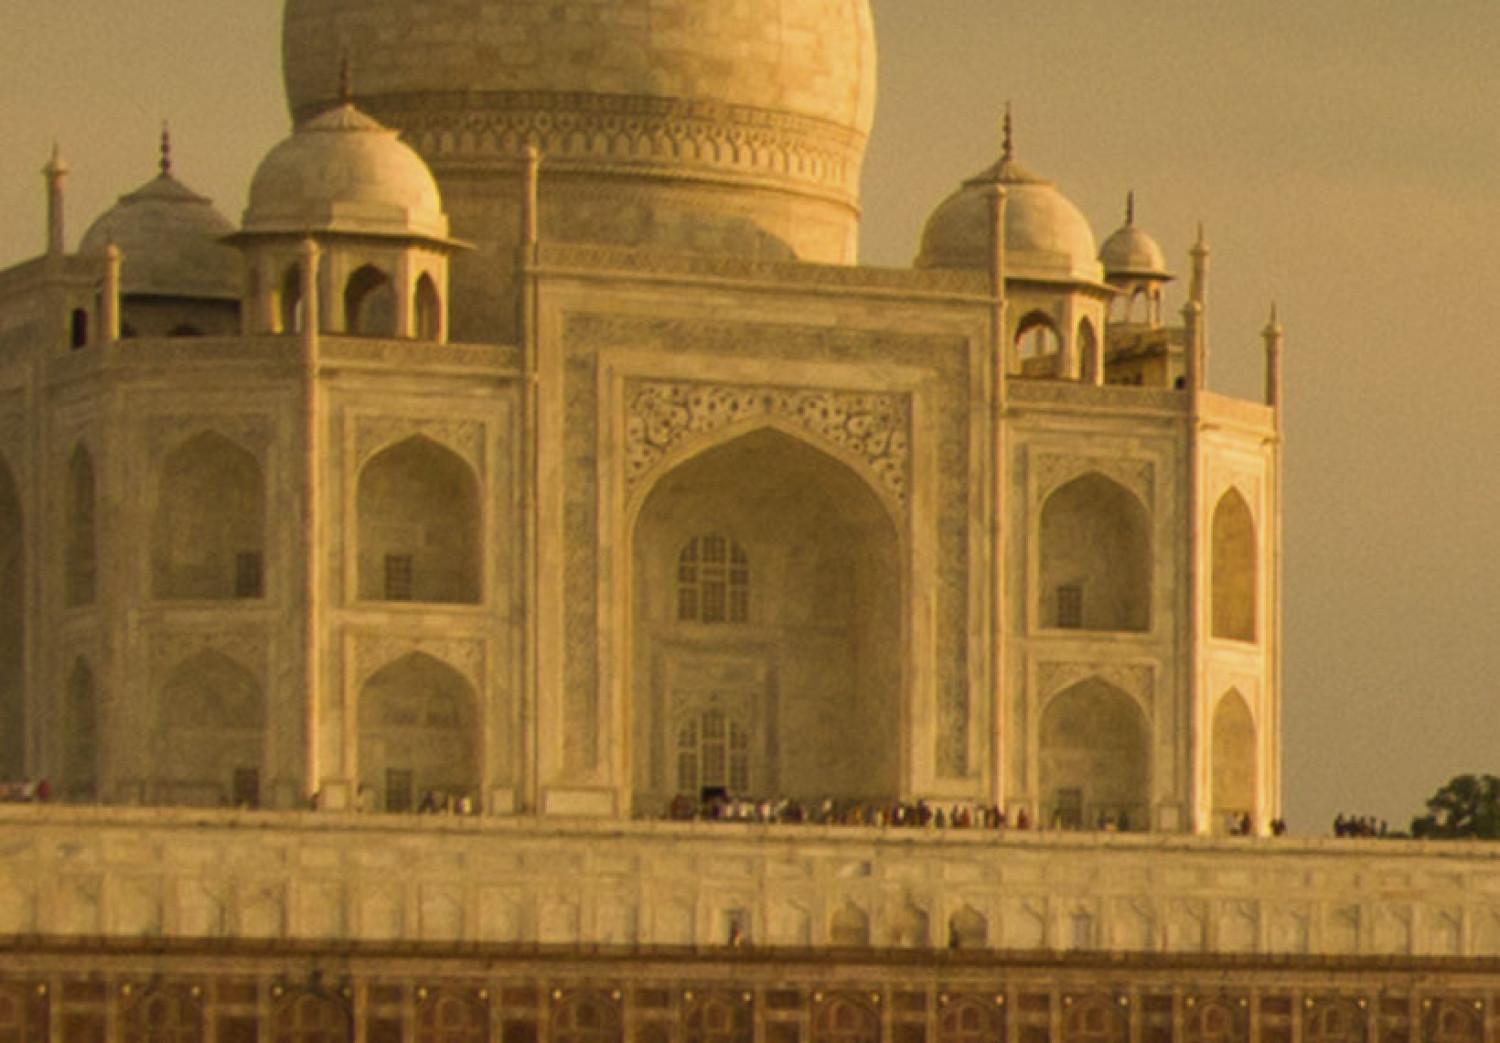 Cuadro moderno El legendario Taj Mahal